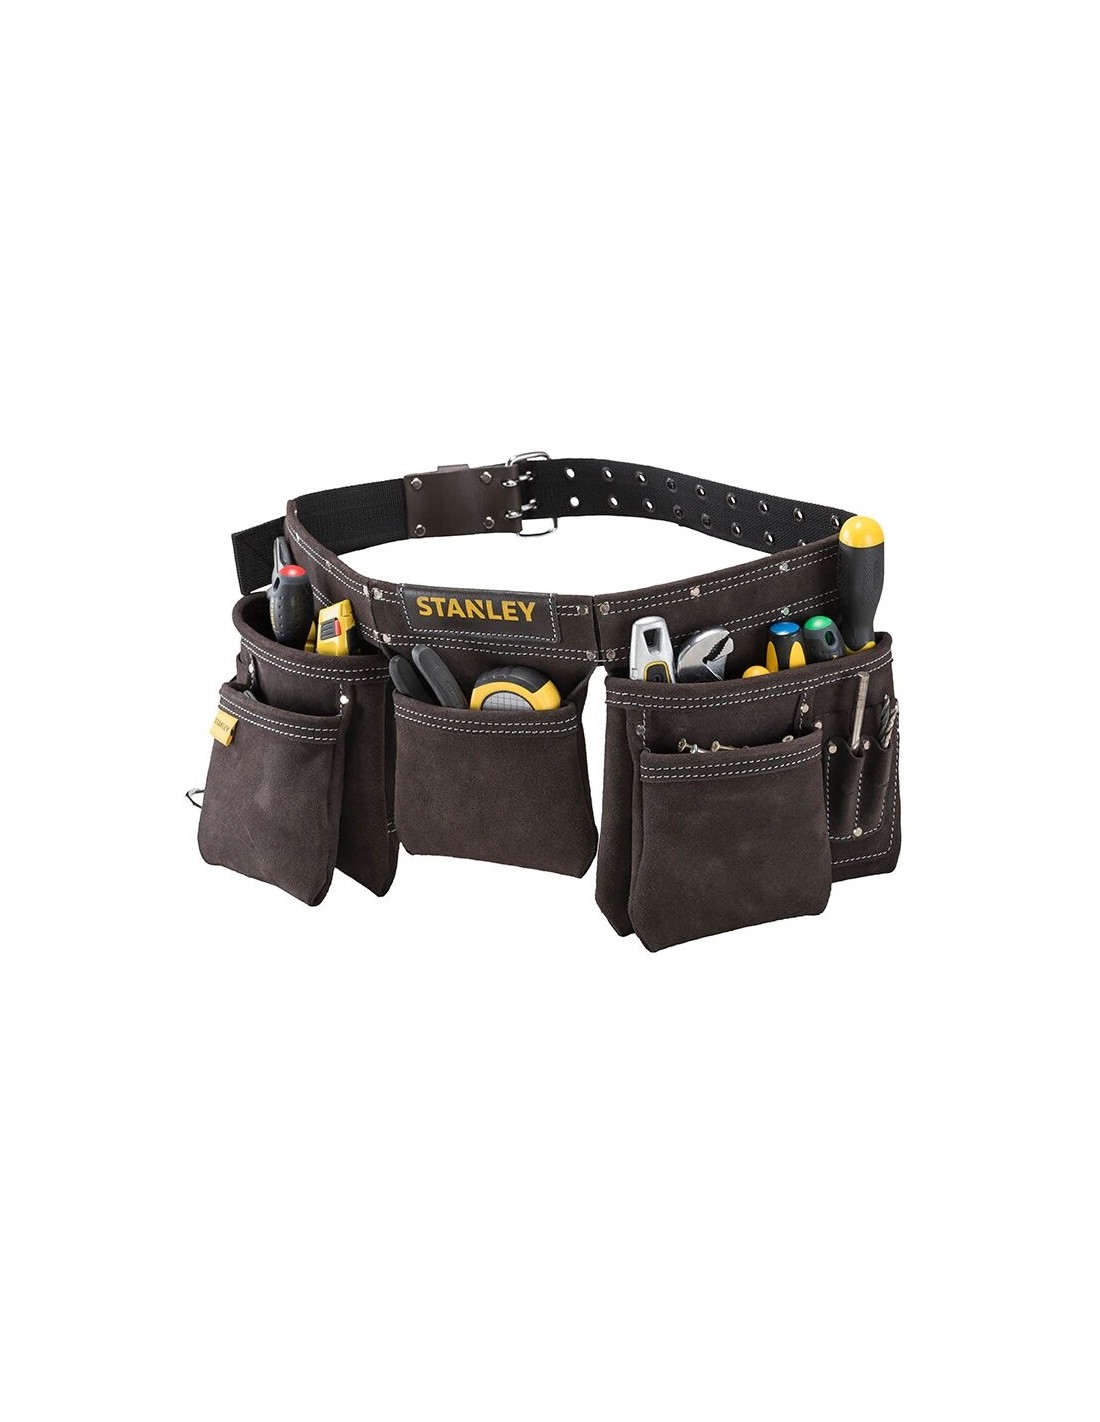 Porte outils double poche en cuir marron vue de dos afin de vois les différentes poches rempllies d'outils